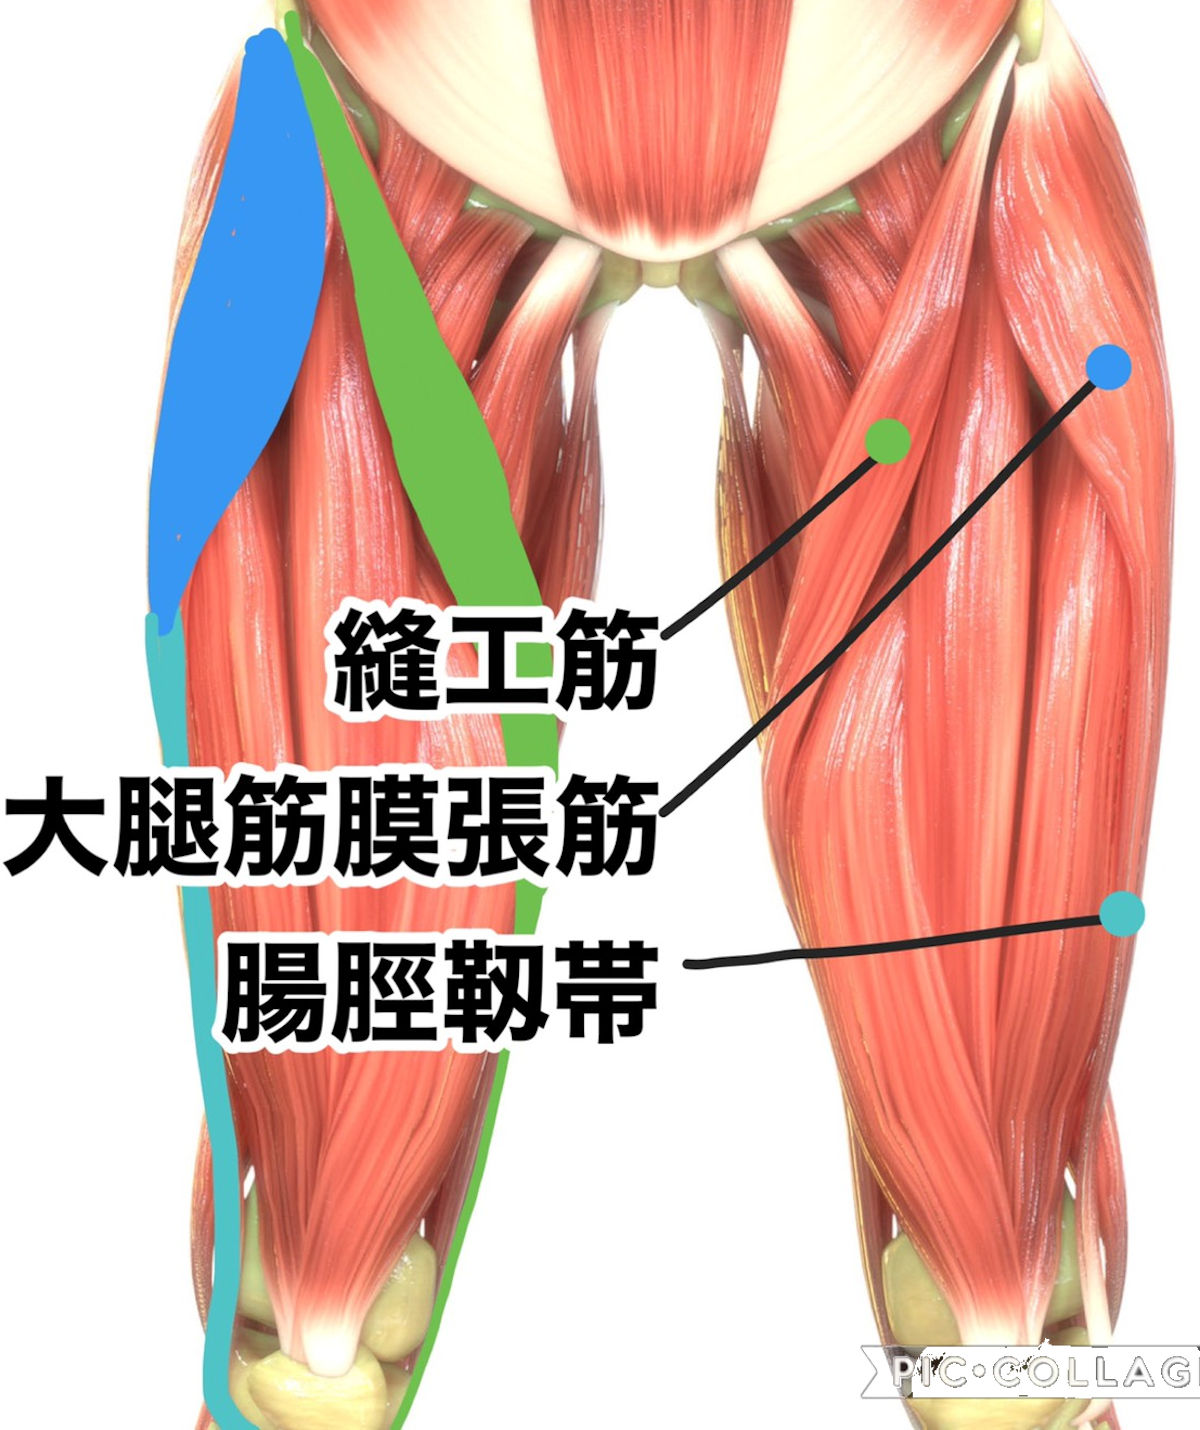 膝が痛い 外側と内側が痛む場合それぞれの原因 自由が丘 治療院よしぐち